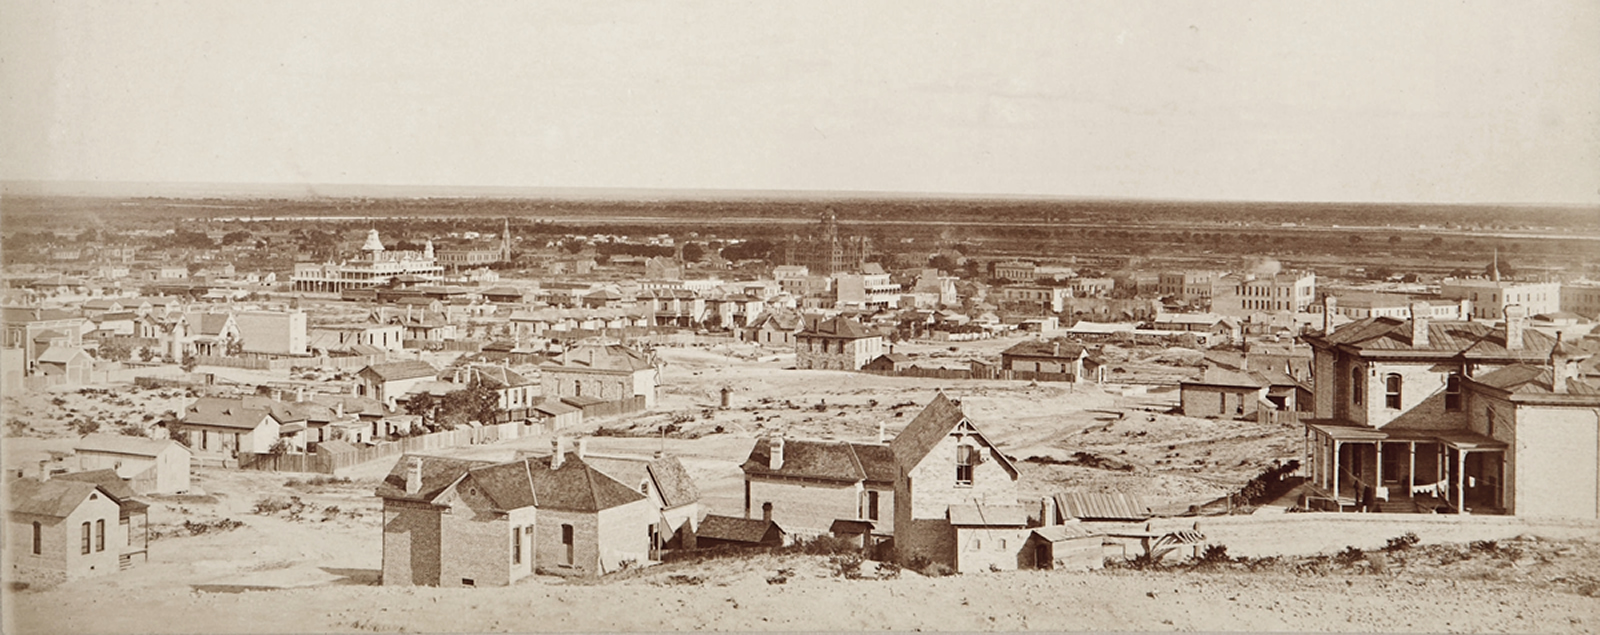 El Paso circa 1880